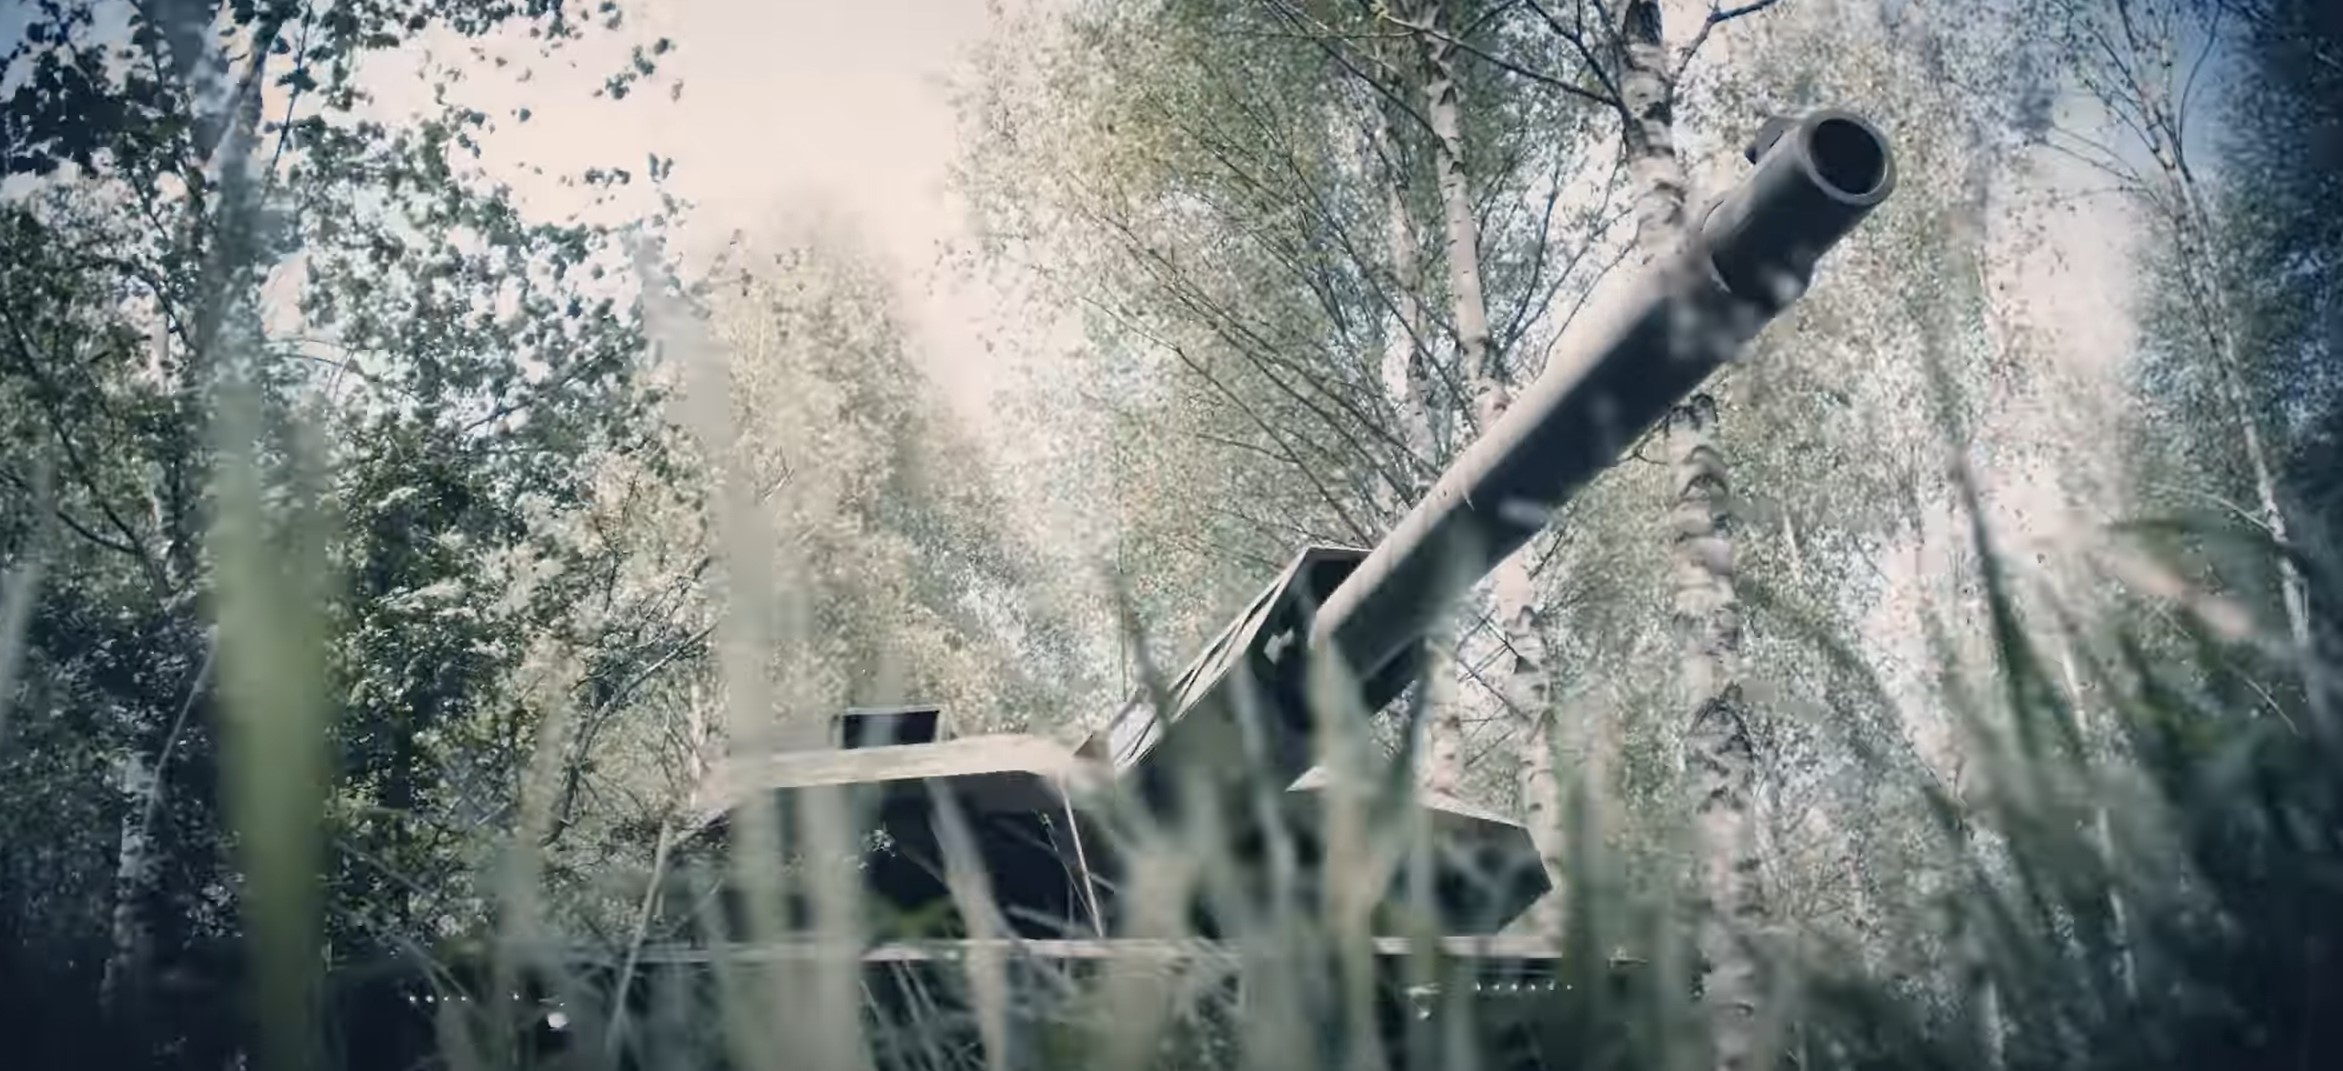 KF51 Panther, nową generację czołgu podstawowego